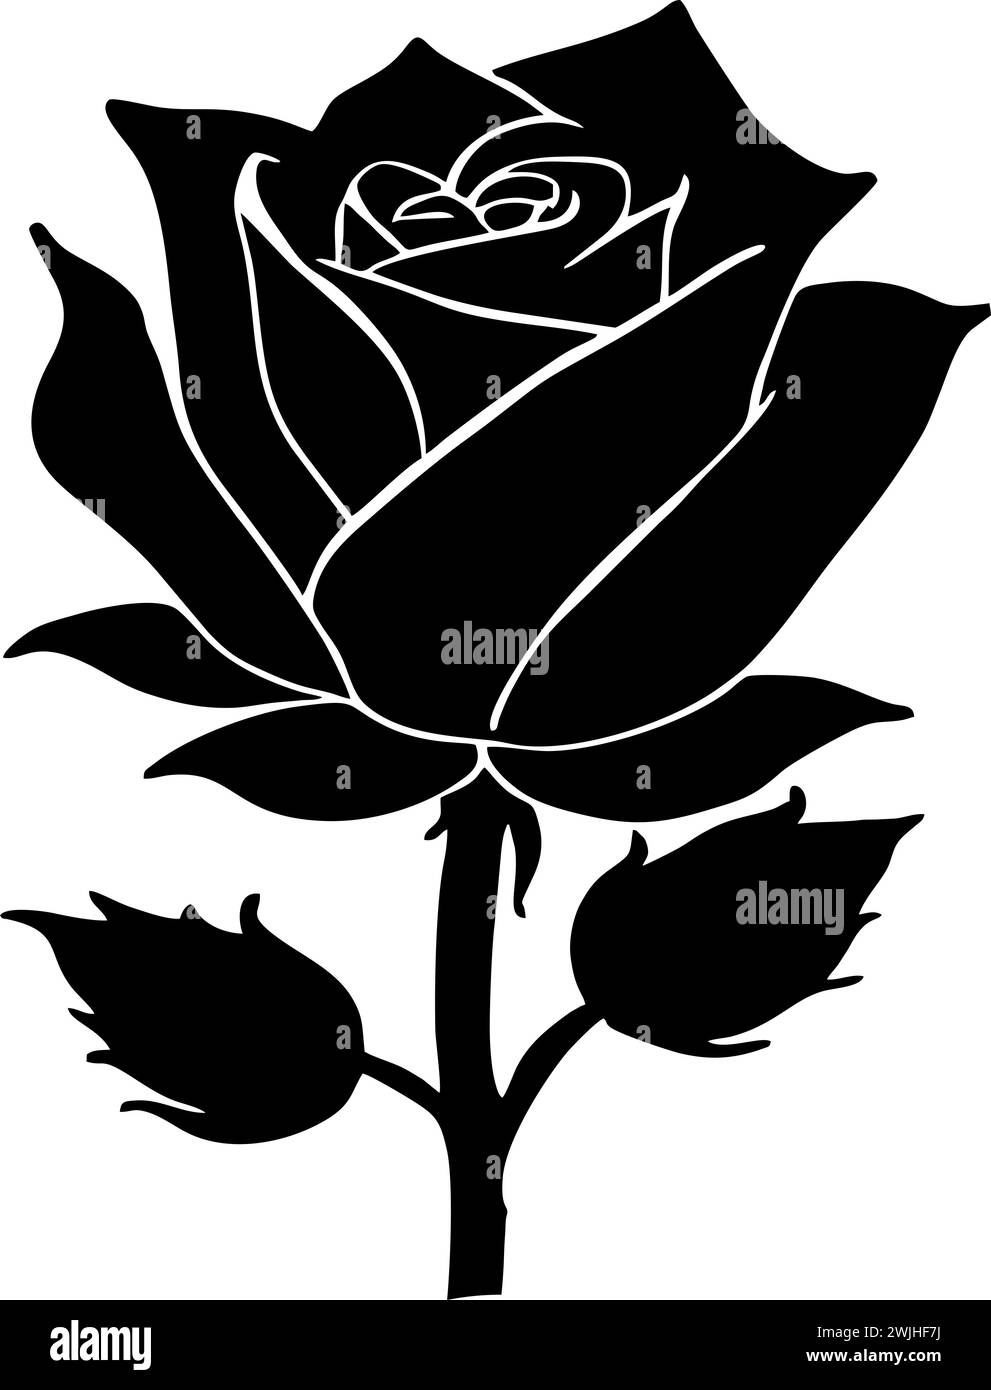 disegno grafico nero di un fiore di rosa con foglie, elemento decorativo monocromatico Foto Stock